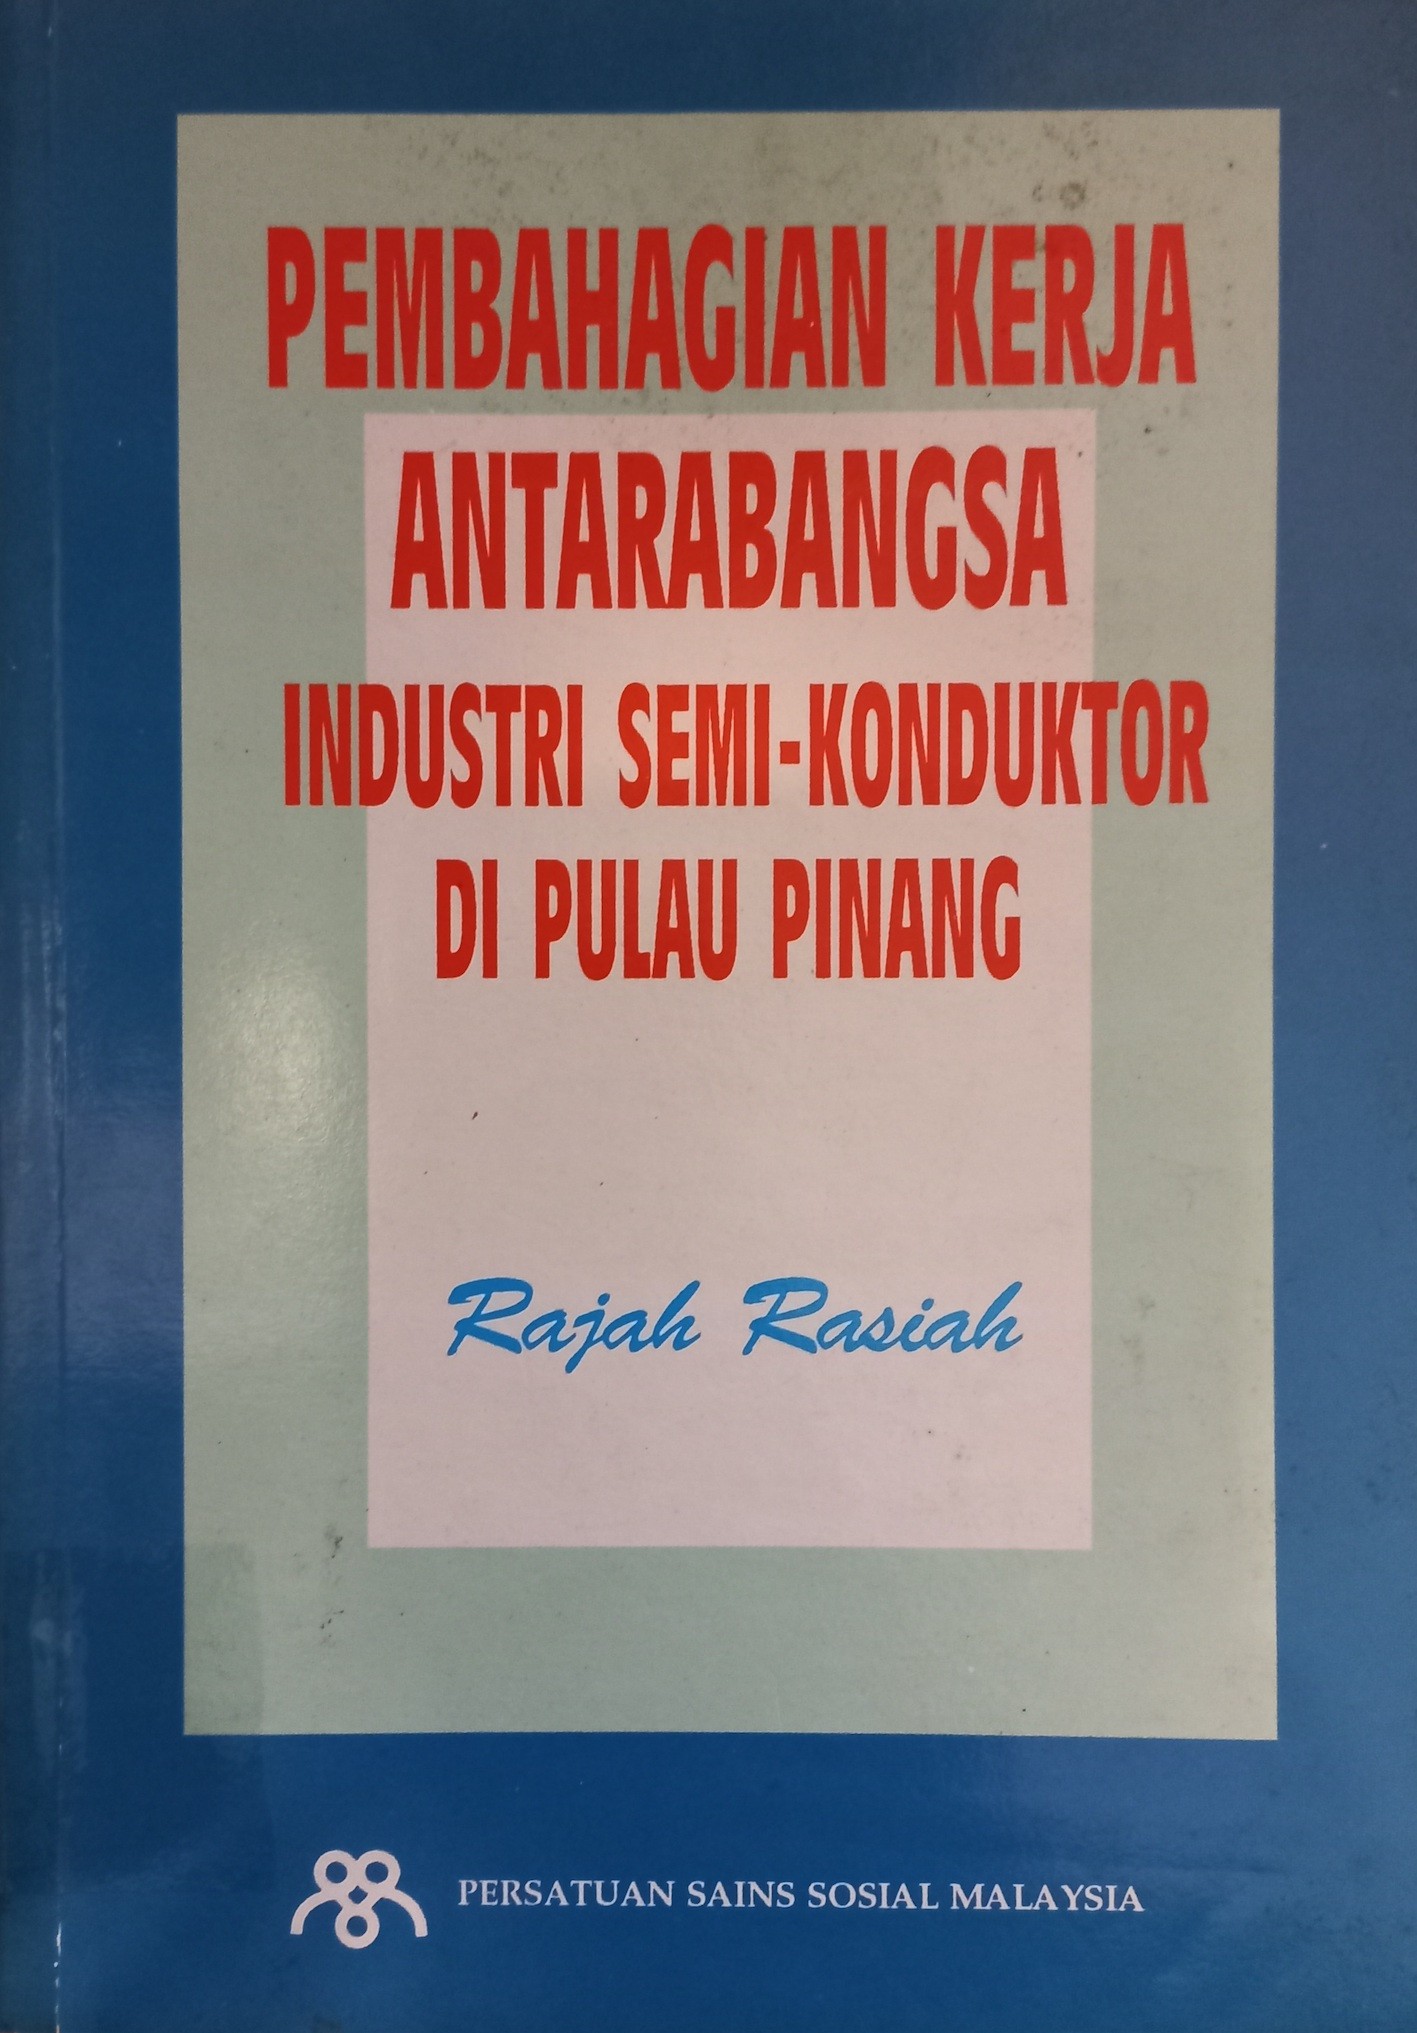 Pembahadian Kerja Antarabangsa Industri Semi-Konduktor Di Pulau Pinang